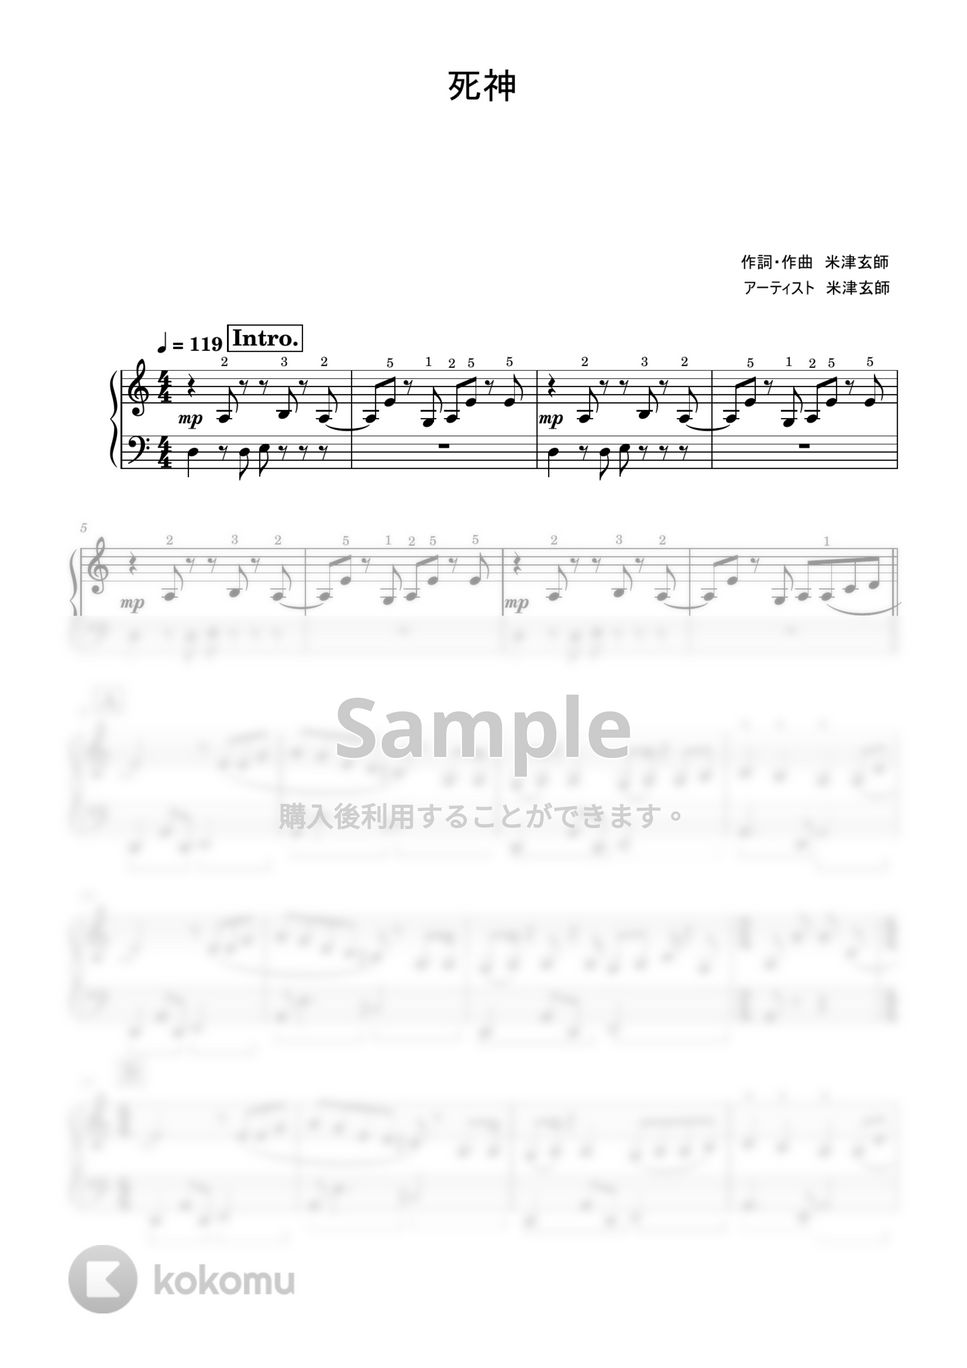 米津玄師 - 死神 (初級レベル) by Saori8Piano